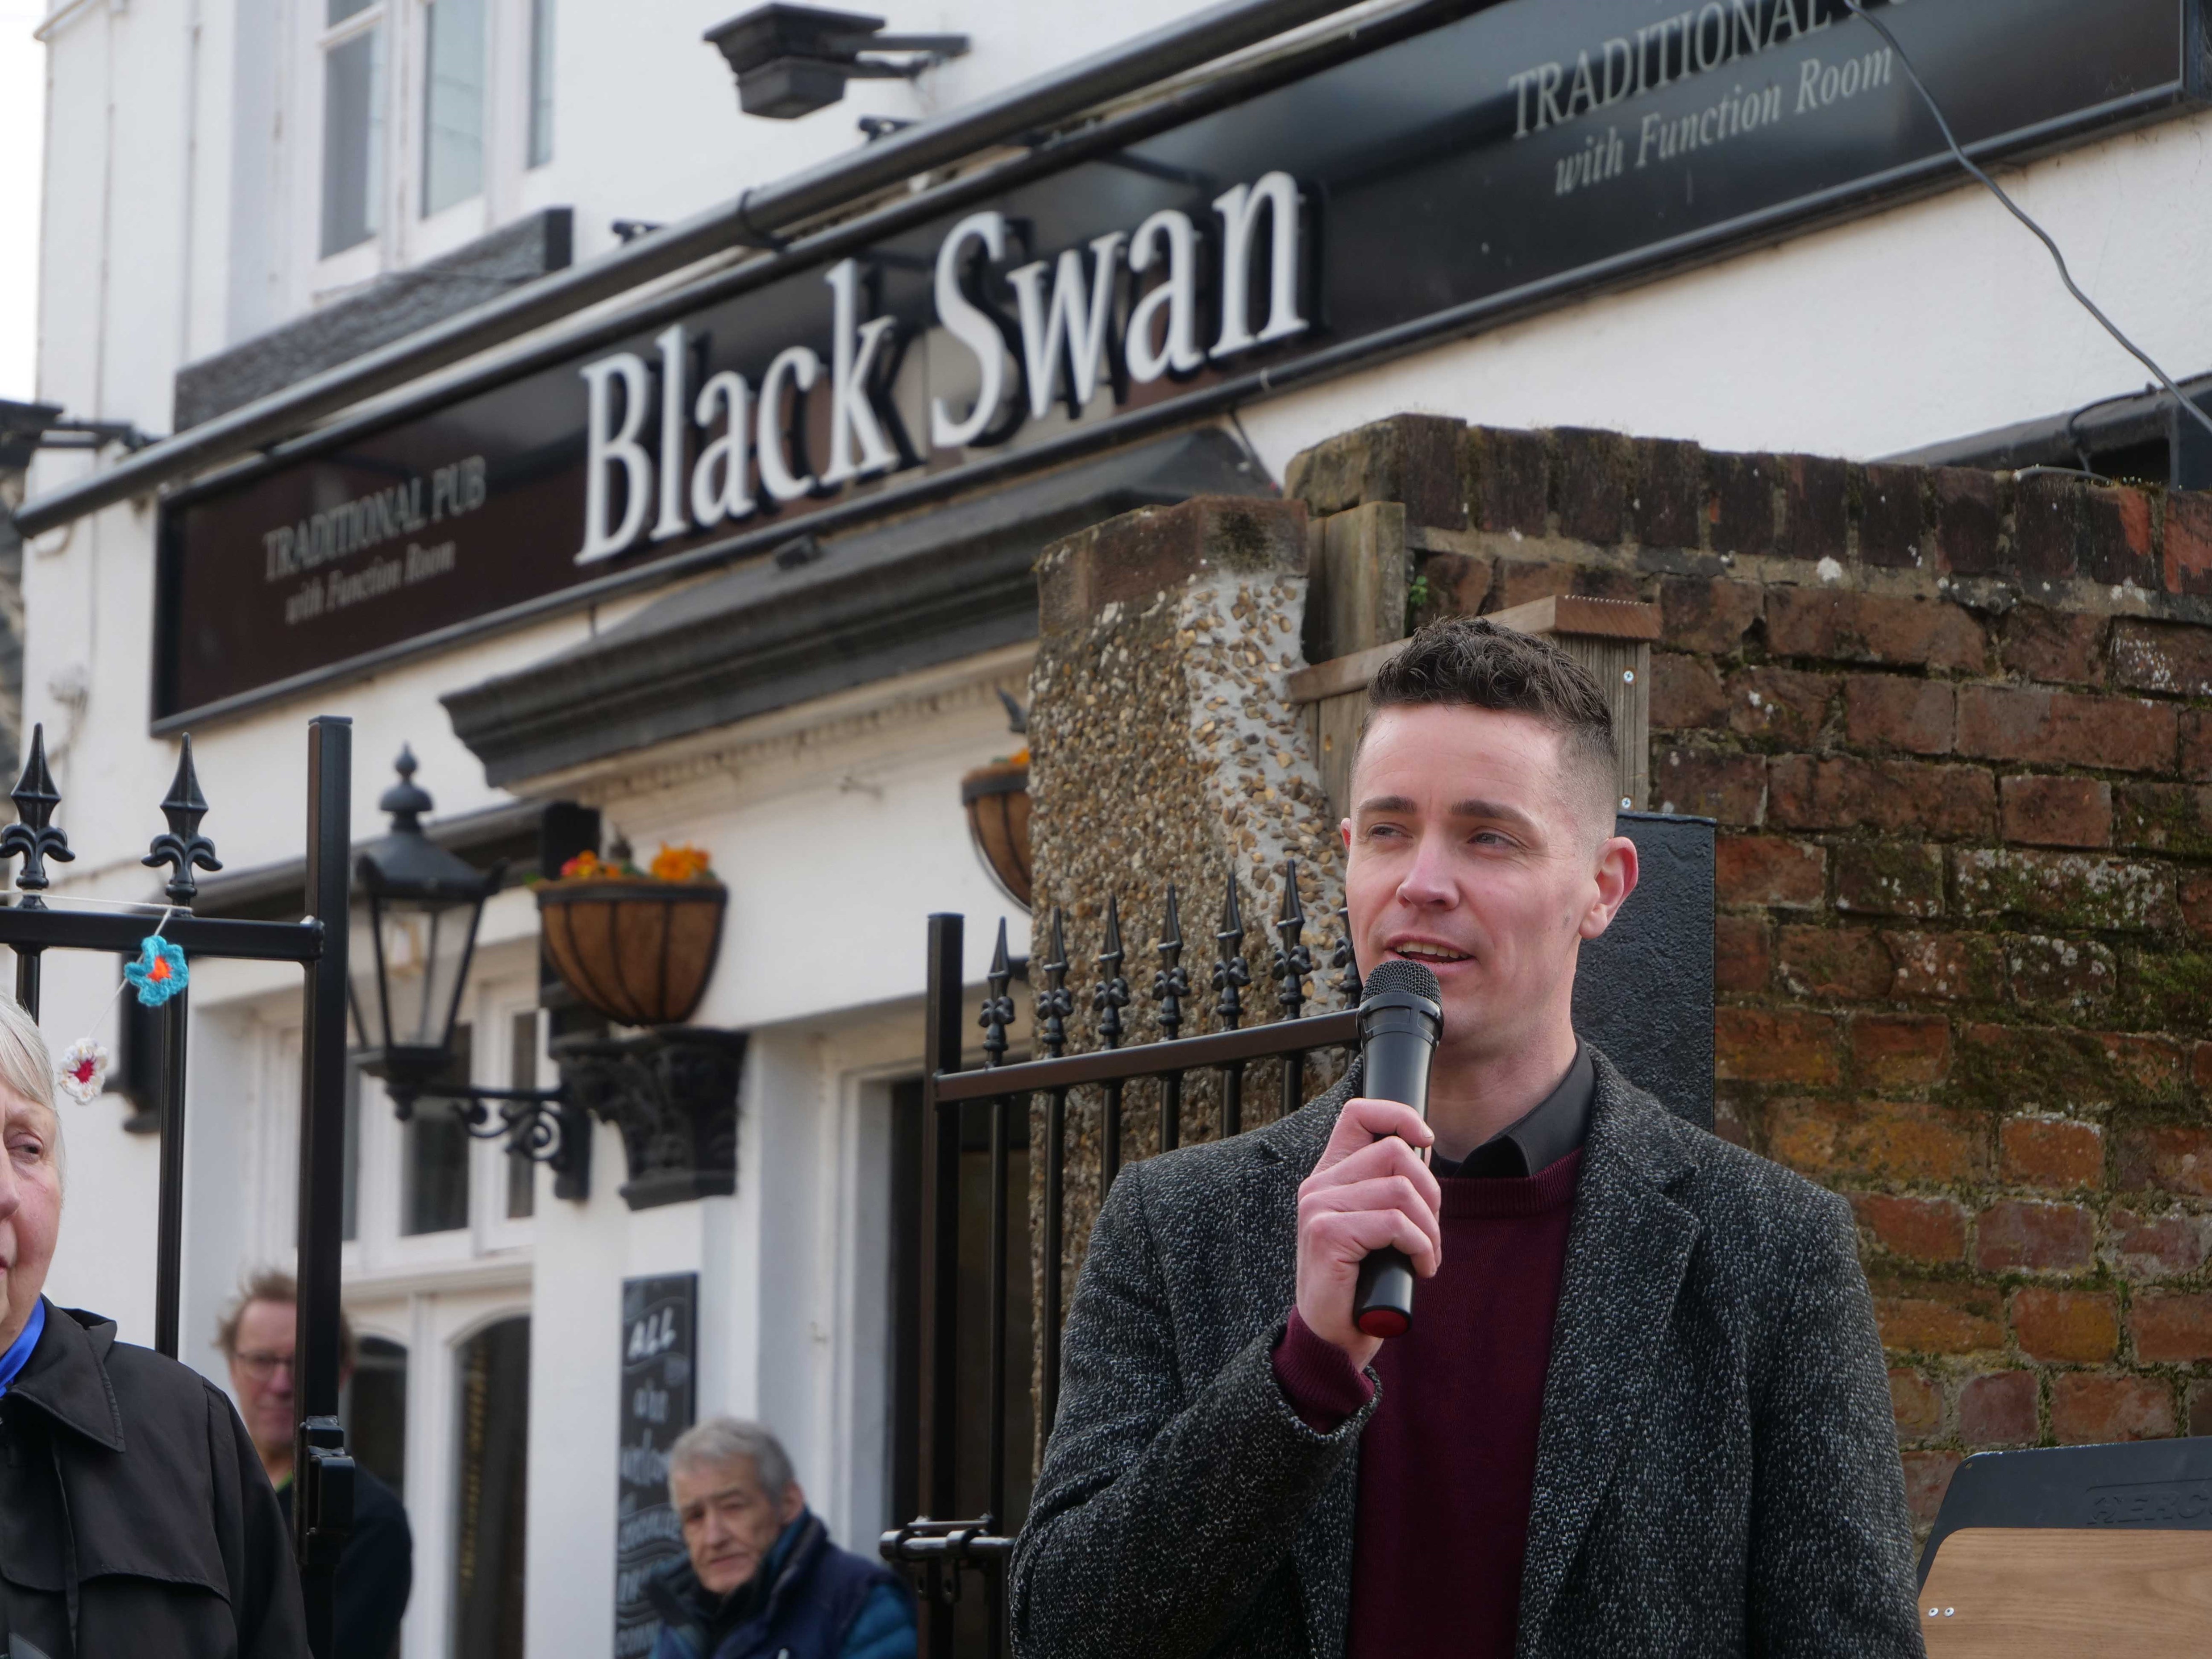 Joe Ballard of the Black Swan Pub & Theatre